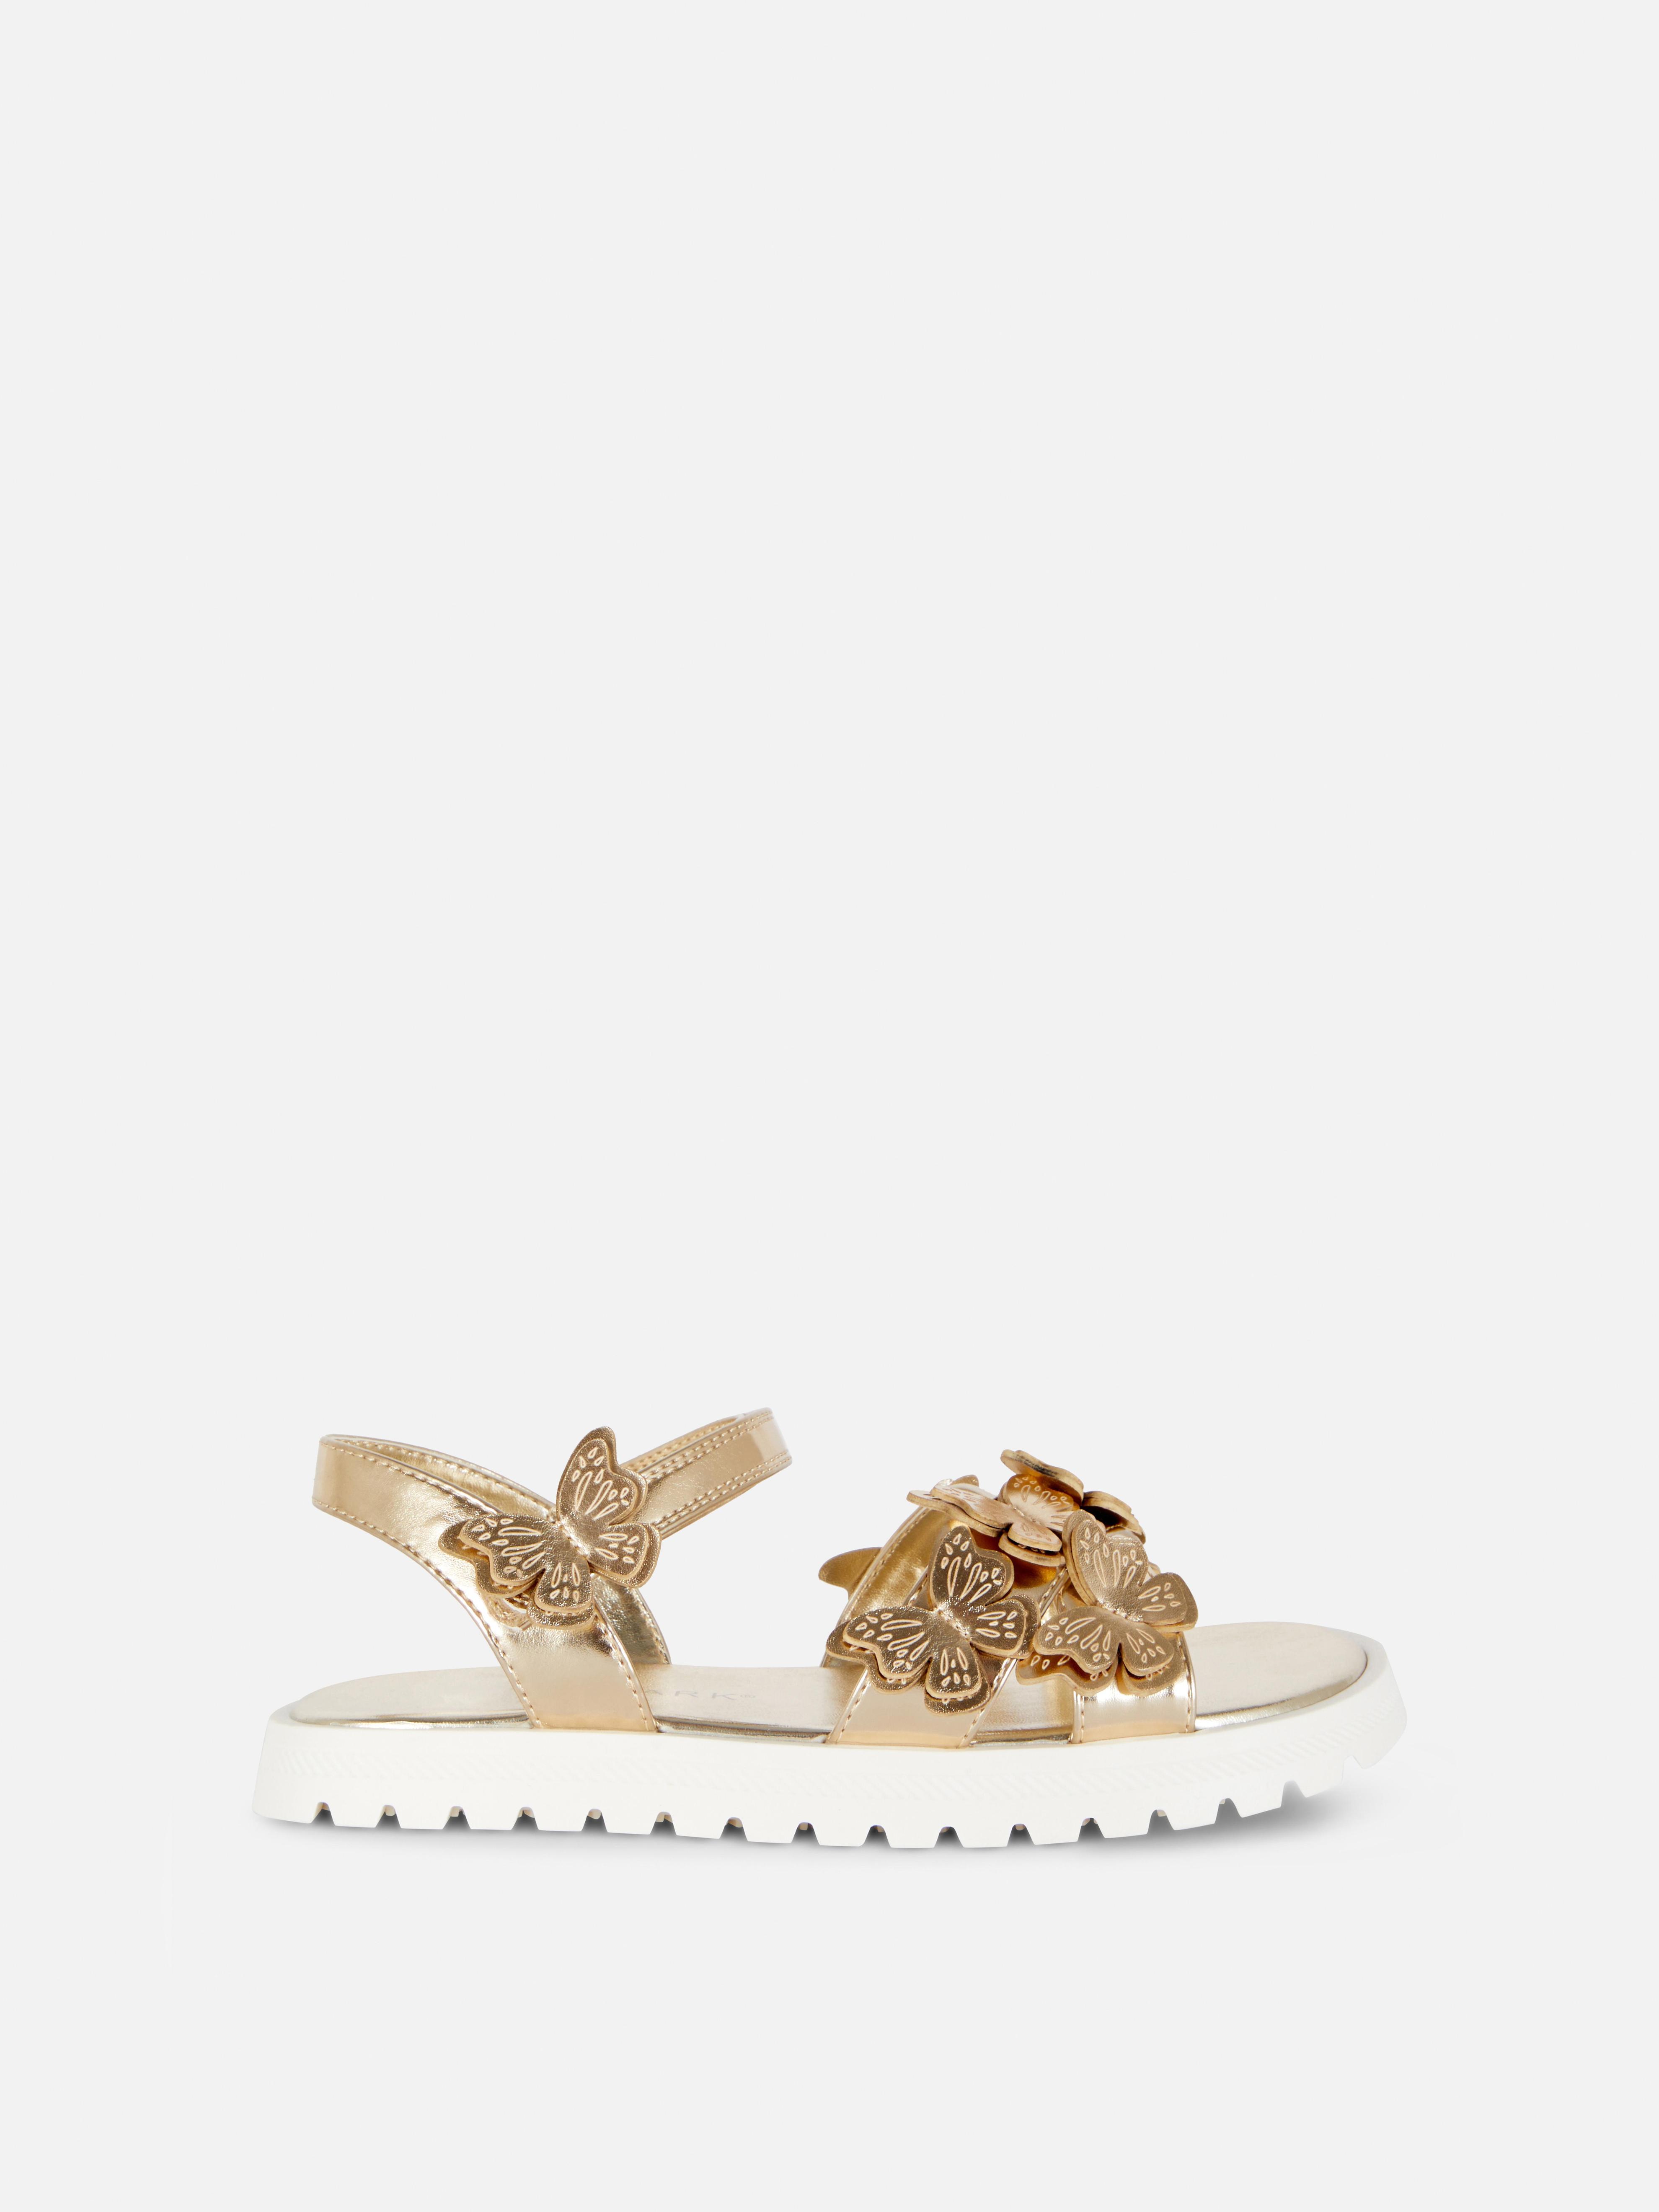 Sandalen mit Schmetterlingsapplikation für 13€ in Primark